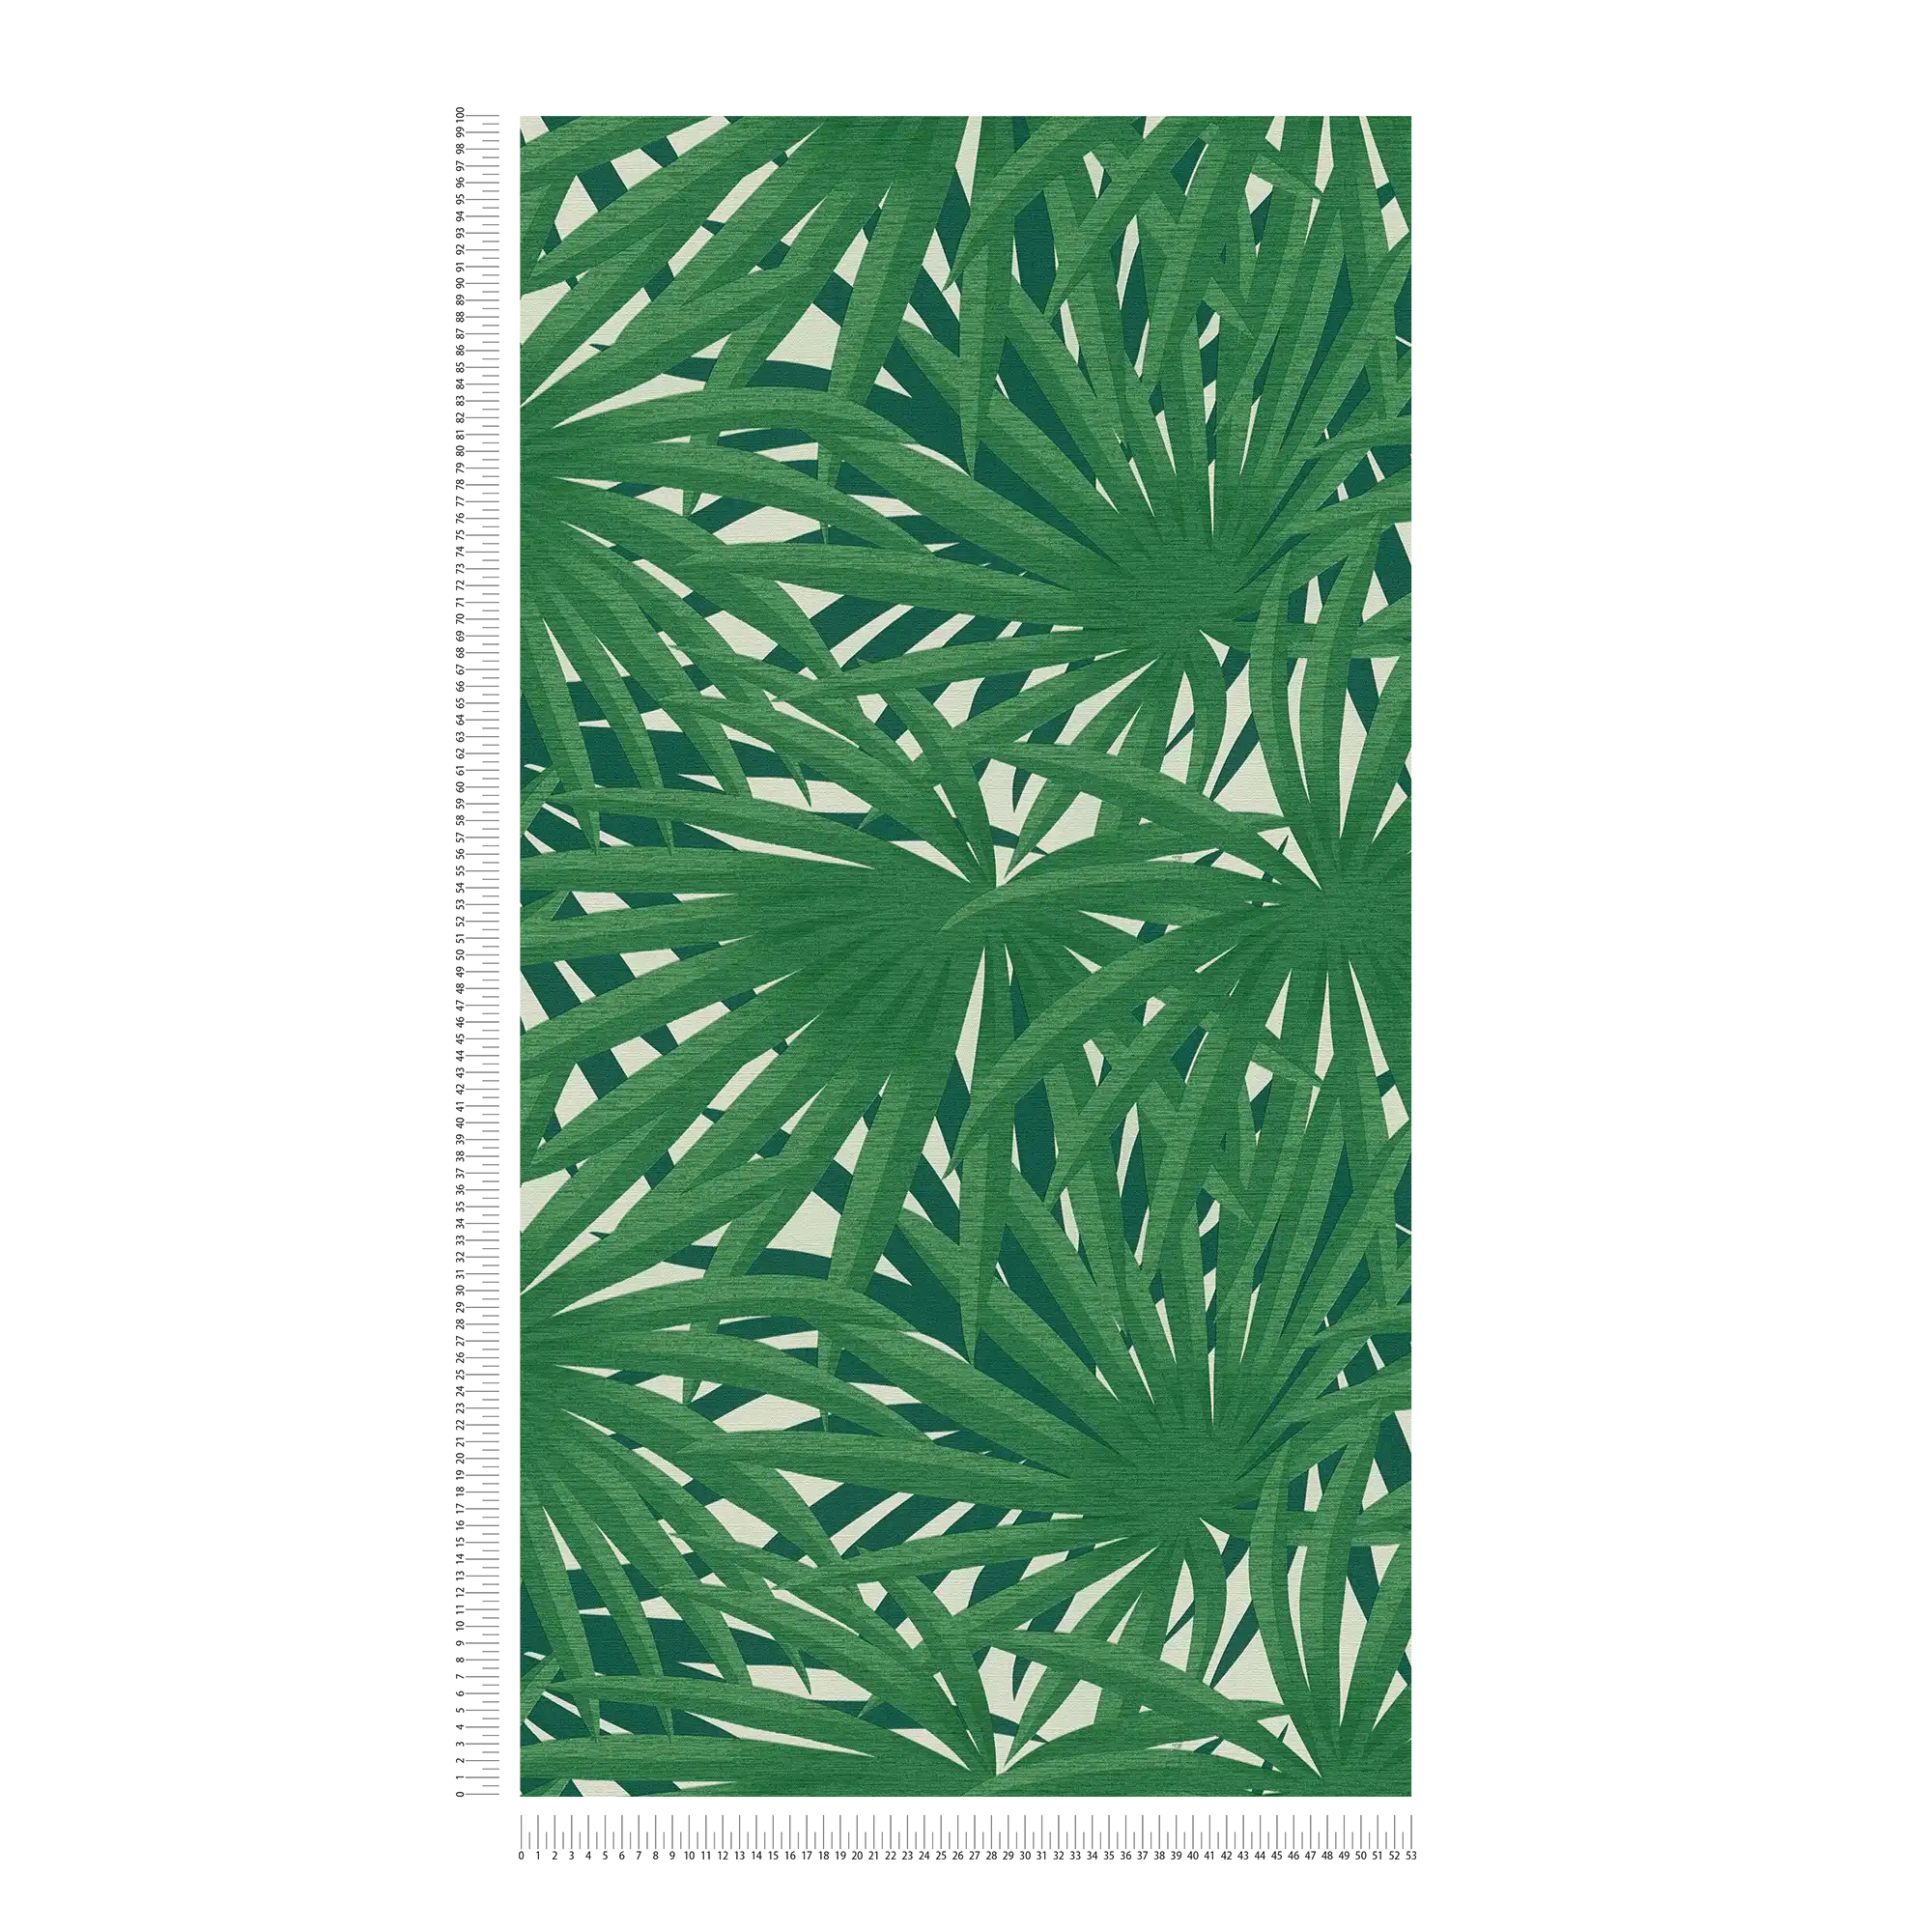             Papier peint tropical au design jungle & à l'éclat métallique - vert, métallique, blanc
        